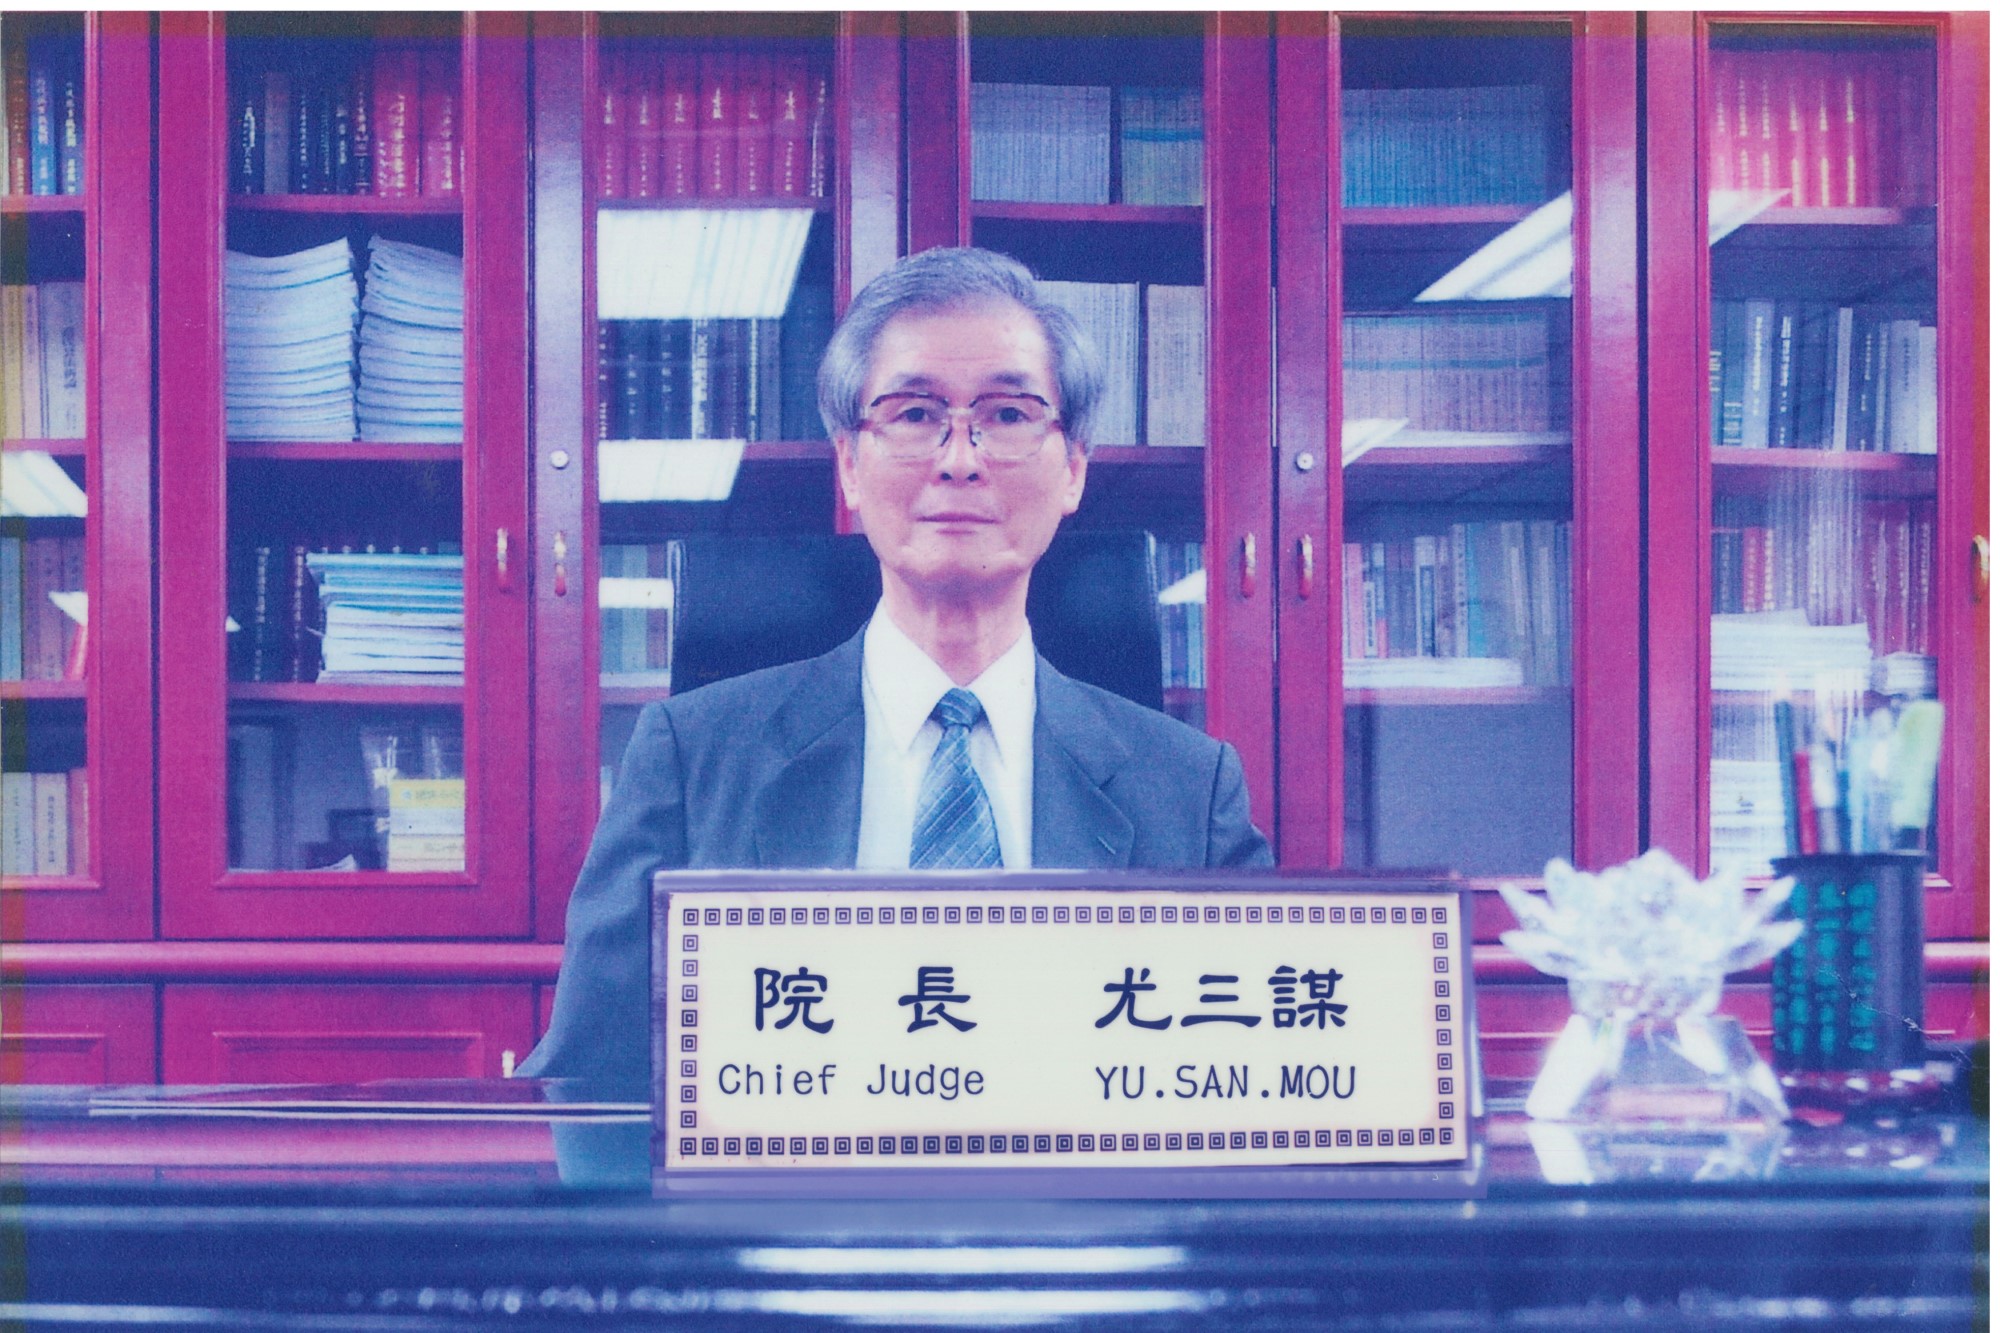 臺灣高等法院高雄分院第7任院長尤三謀